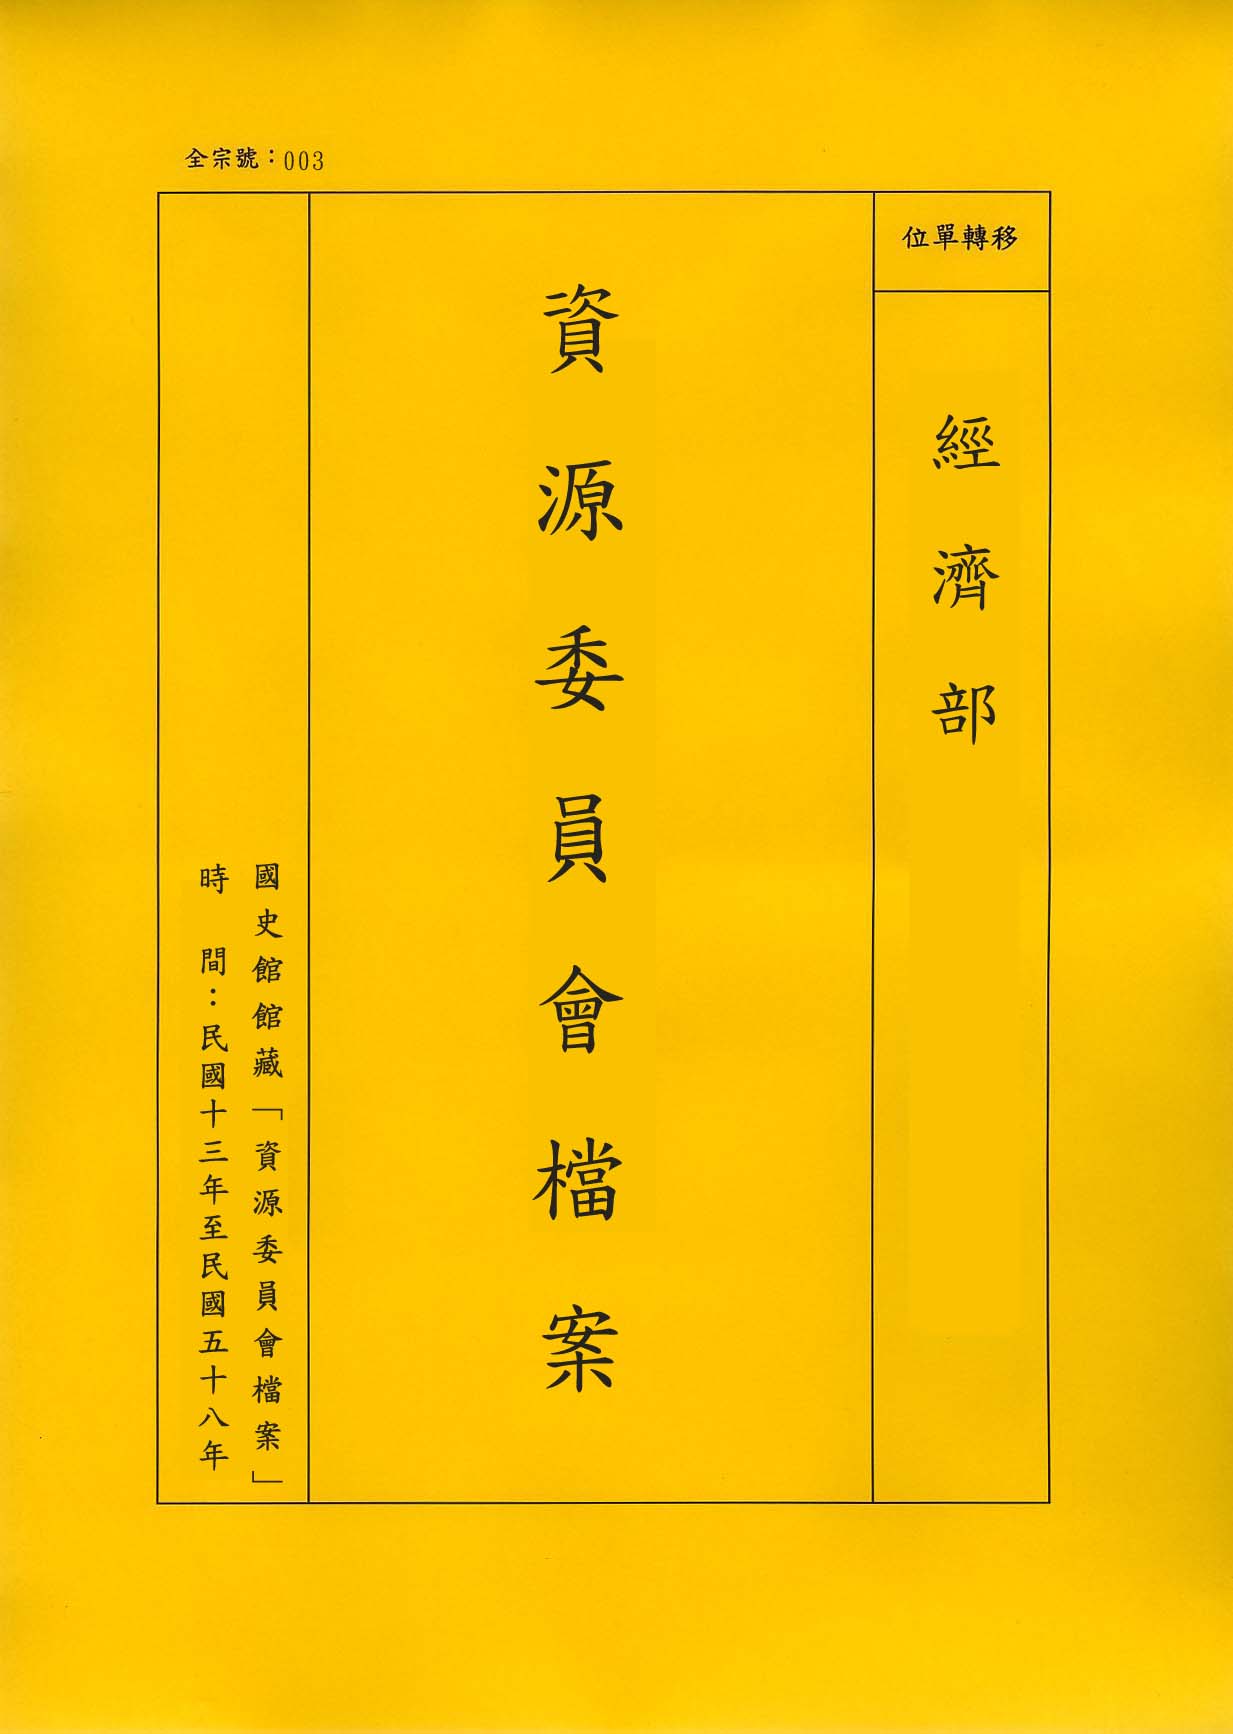 卷名:中國物資供應委員會函件Letters of Chinese Supply Commission(003-020600-1796)